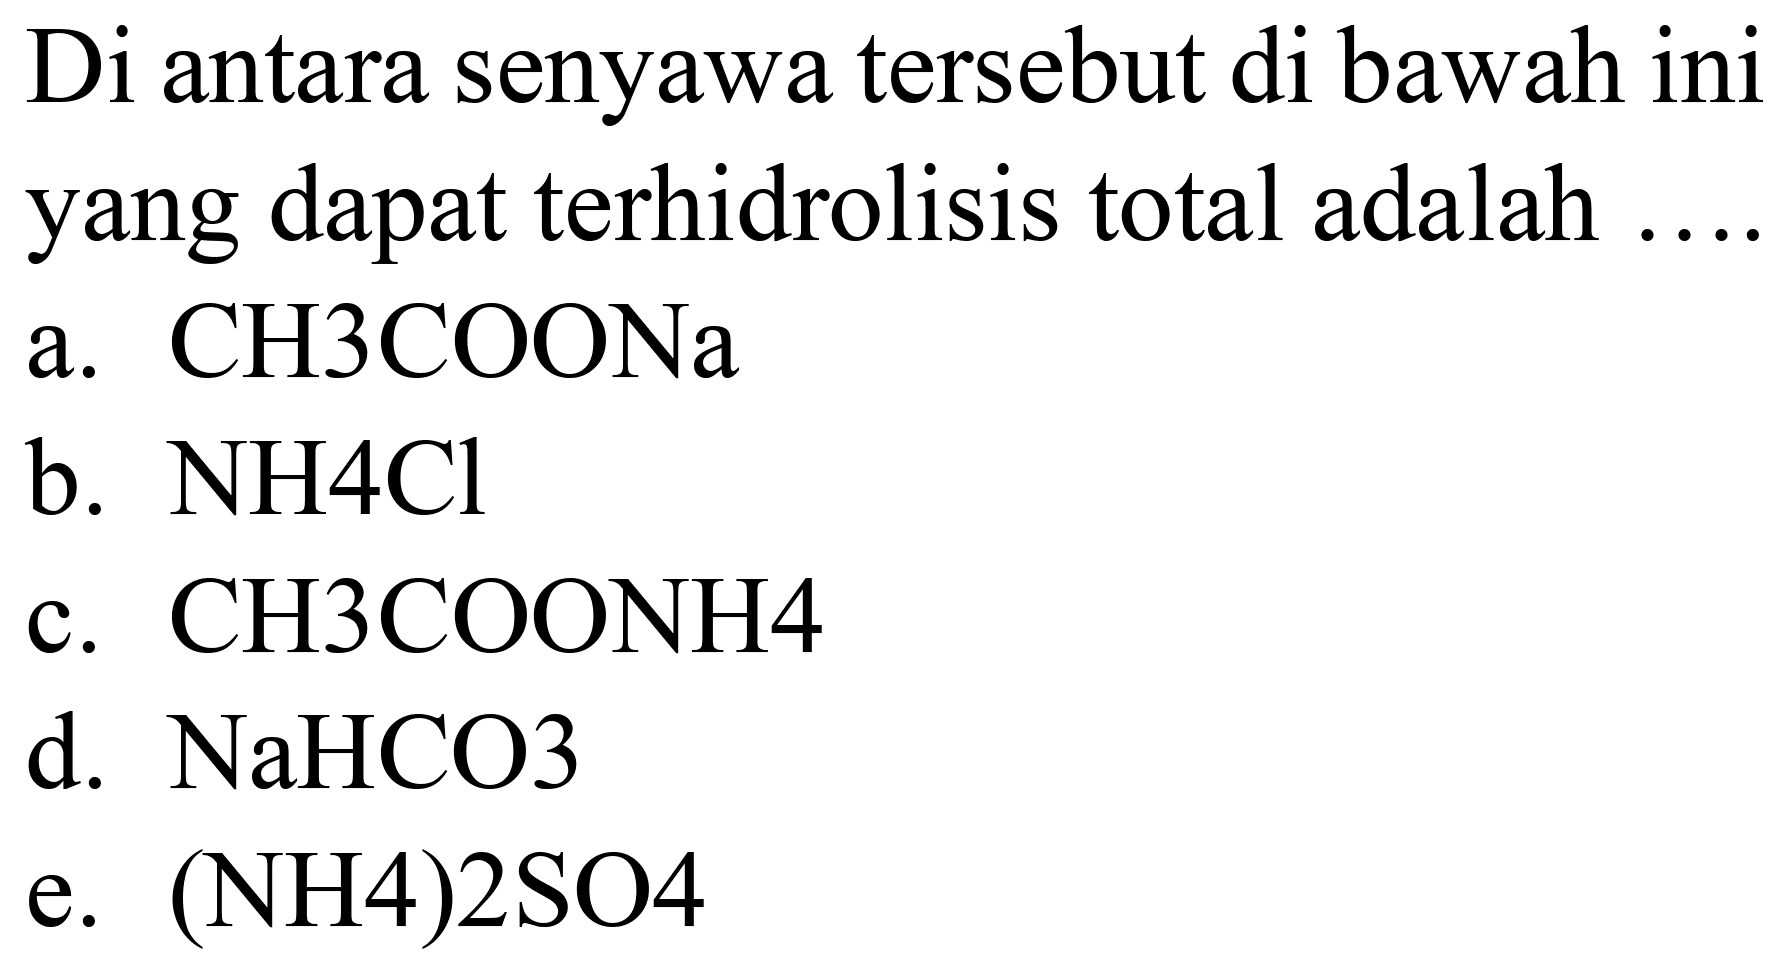 Di antara senyawa tersebut di bawah ini yang dapat terhidrolisis total adalah ....
a.  CH 3 COONa 
b.  NH 4 Cl 
c.  CH 3 COONH 4 
d.  NaHCO 3 
e. (NH4)2SO4